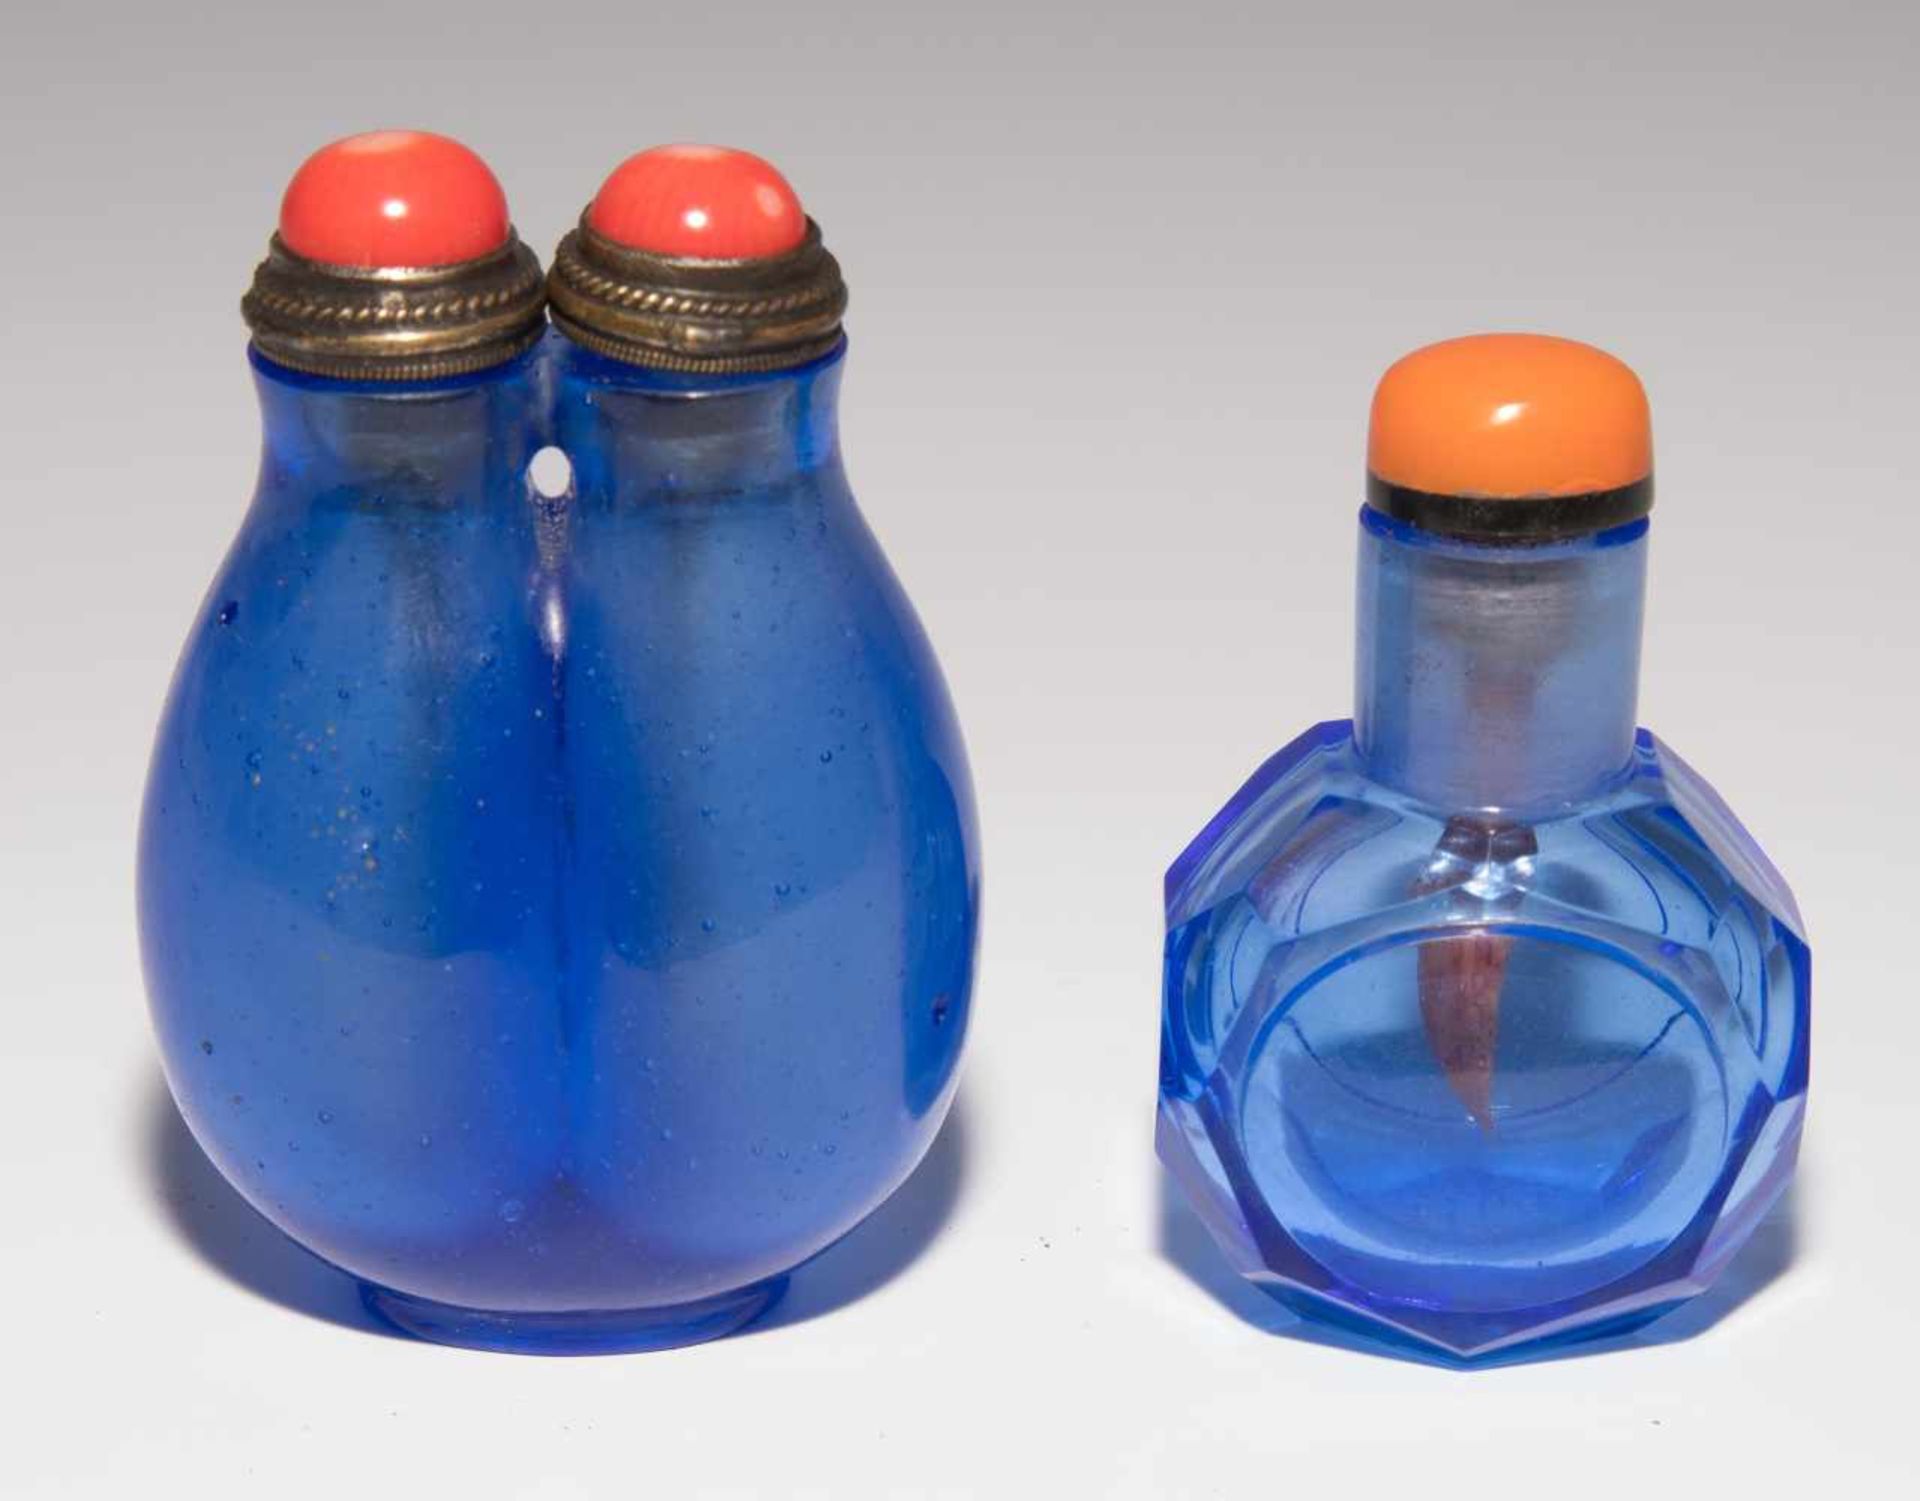 6 Glas Snuff BottlesChina. Hellblaues, transparentes Glas. Ein Doppel-Snuff Bottle, zwei mit - Bild 3 aus 22